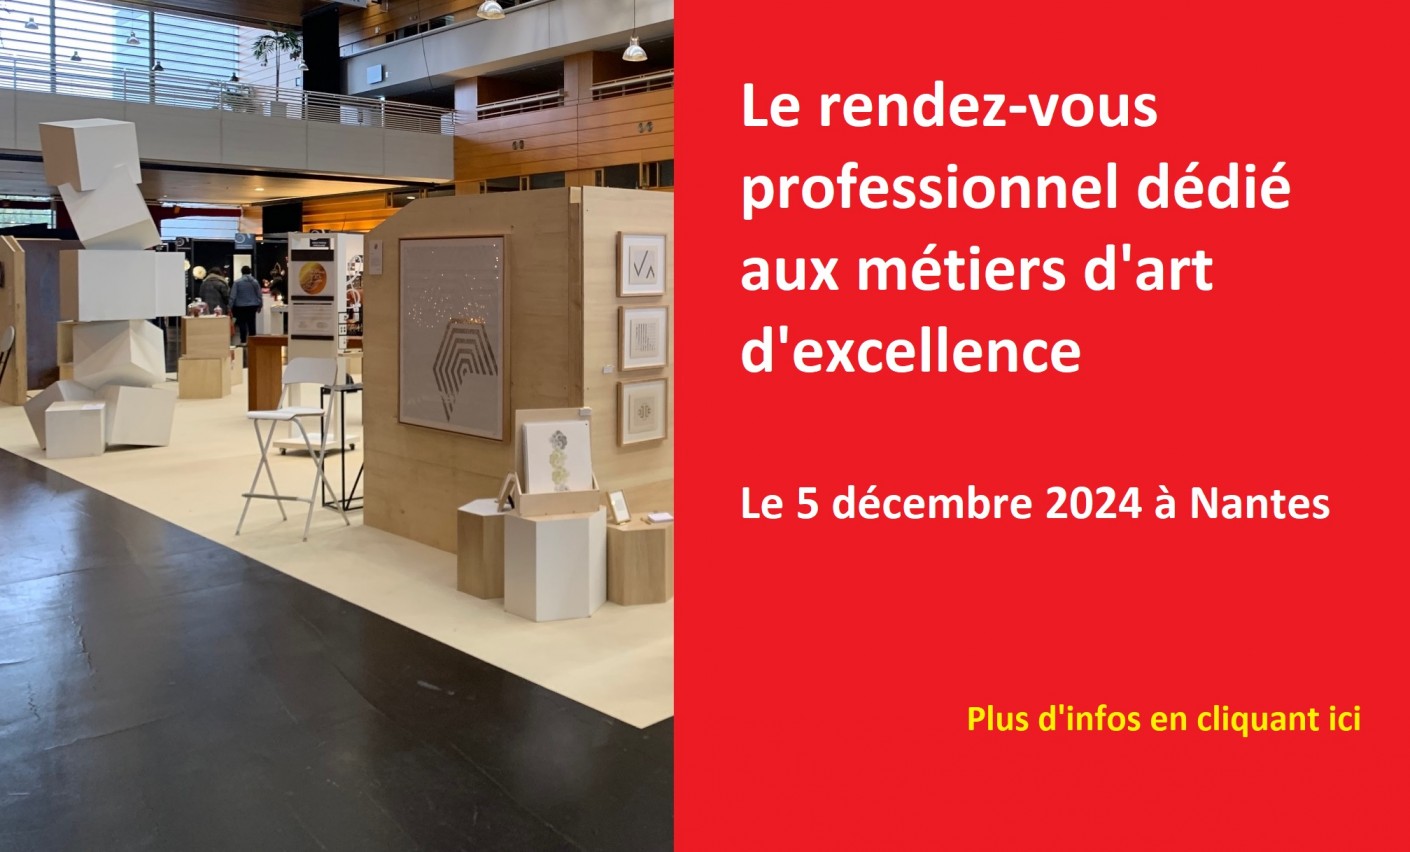 Candidature "Le rendez-vous professionnel dédié aux métiers d'art" - 5 décembre 2024 à Nantes